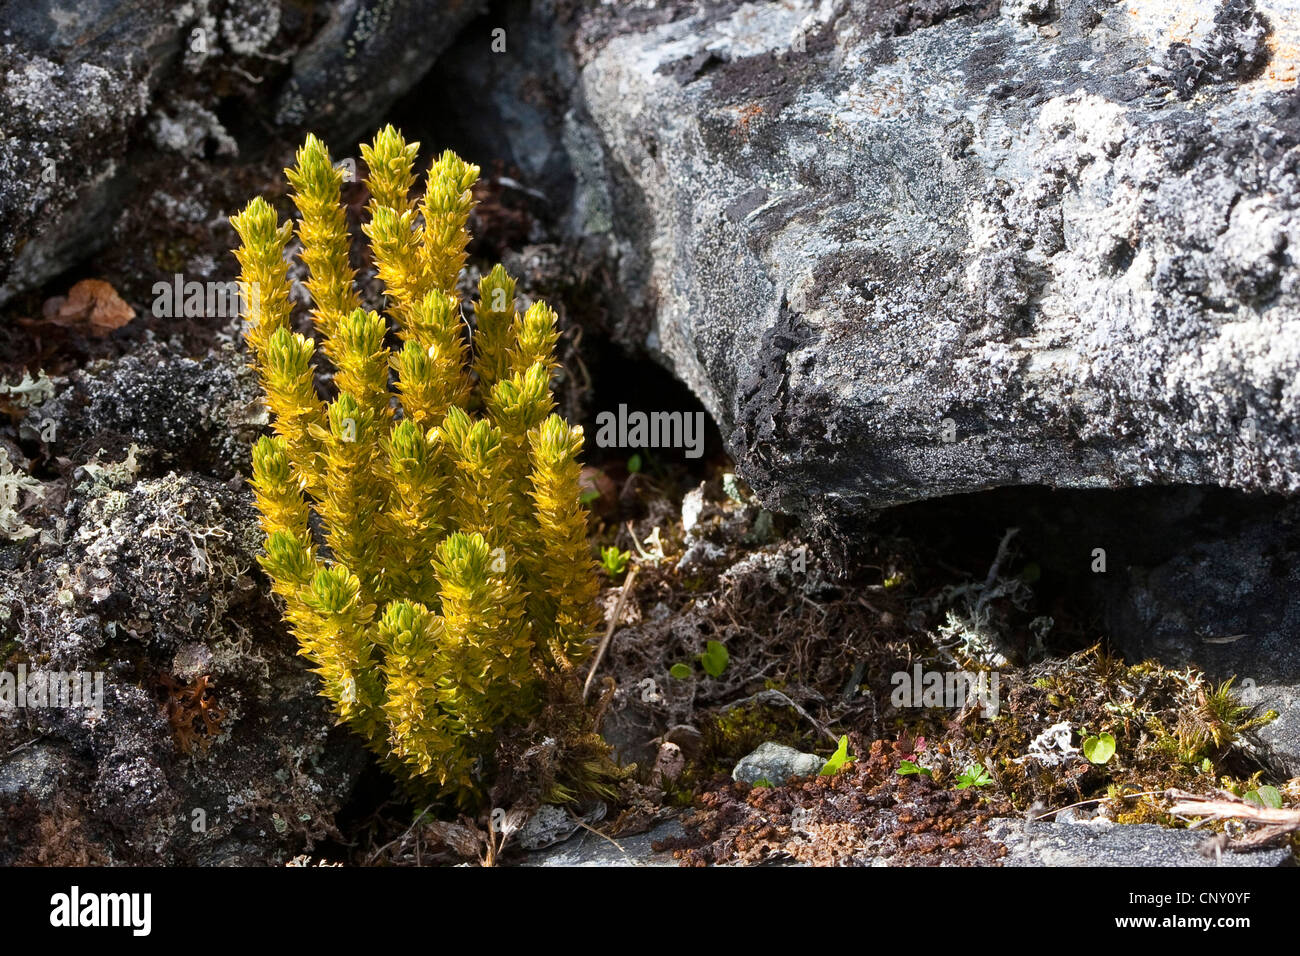 fir clubmoss, mountain clubmoss, fir-clubmoss (Huperzia selago, Lycopodium selago), Germany Stock Photo